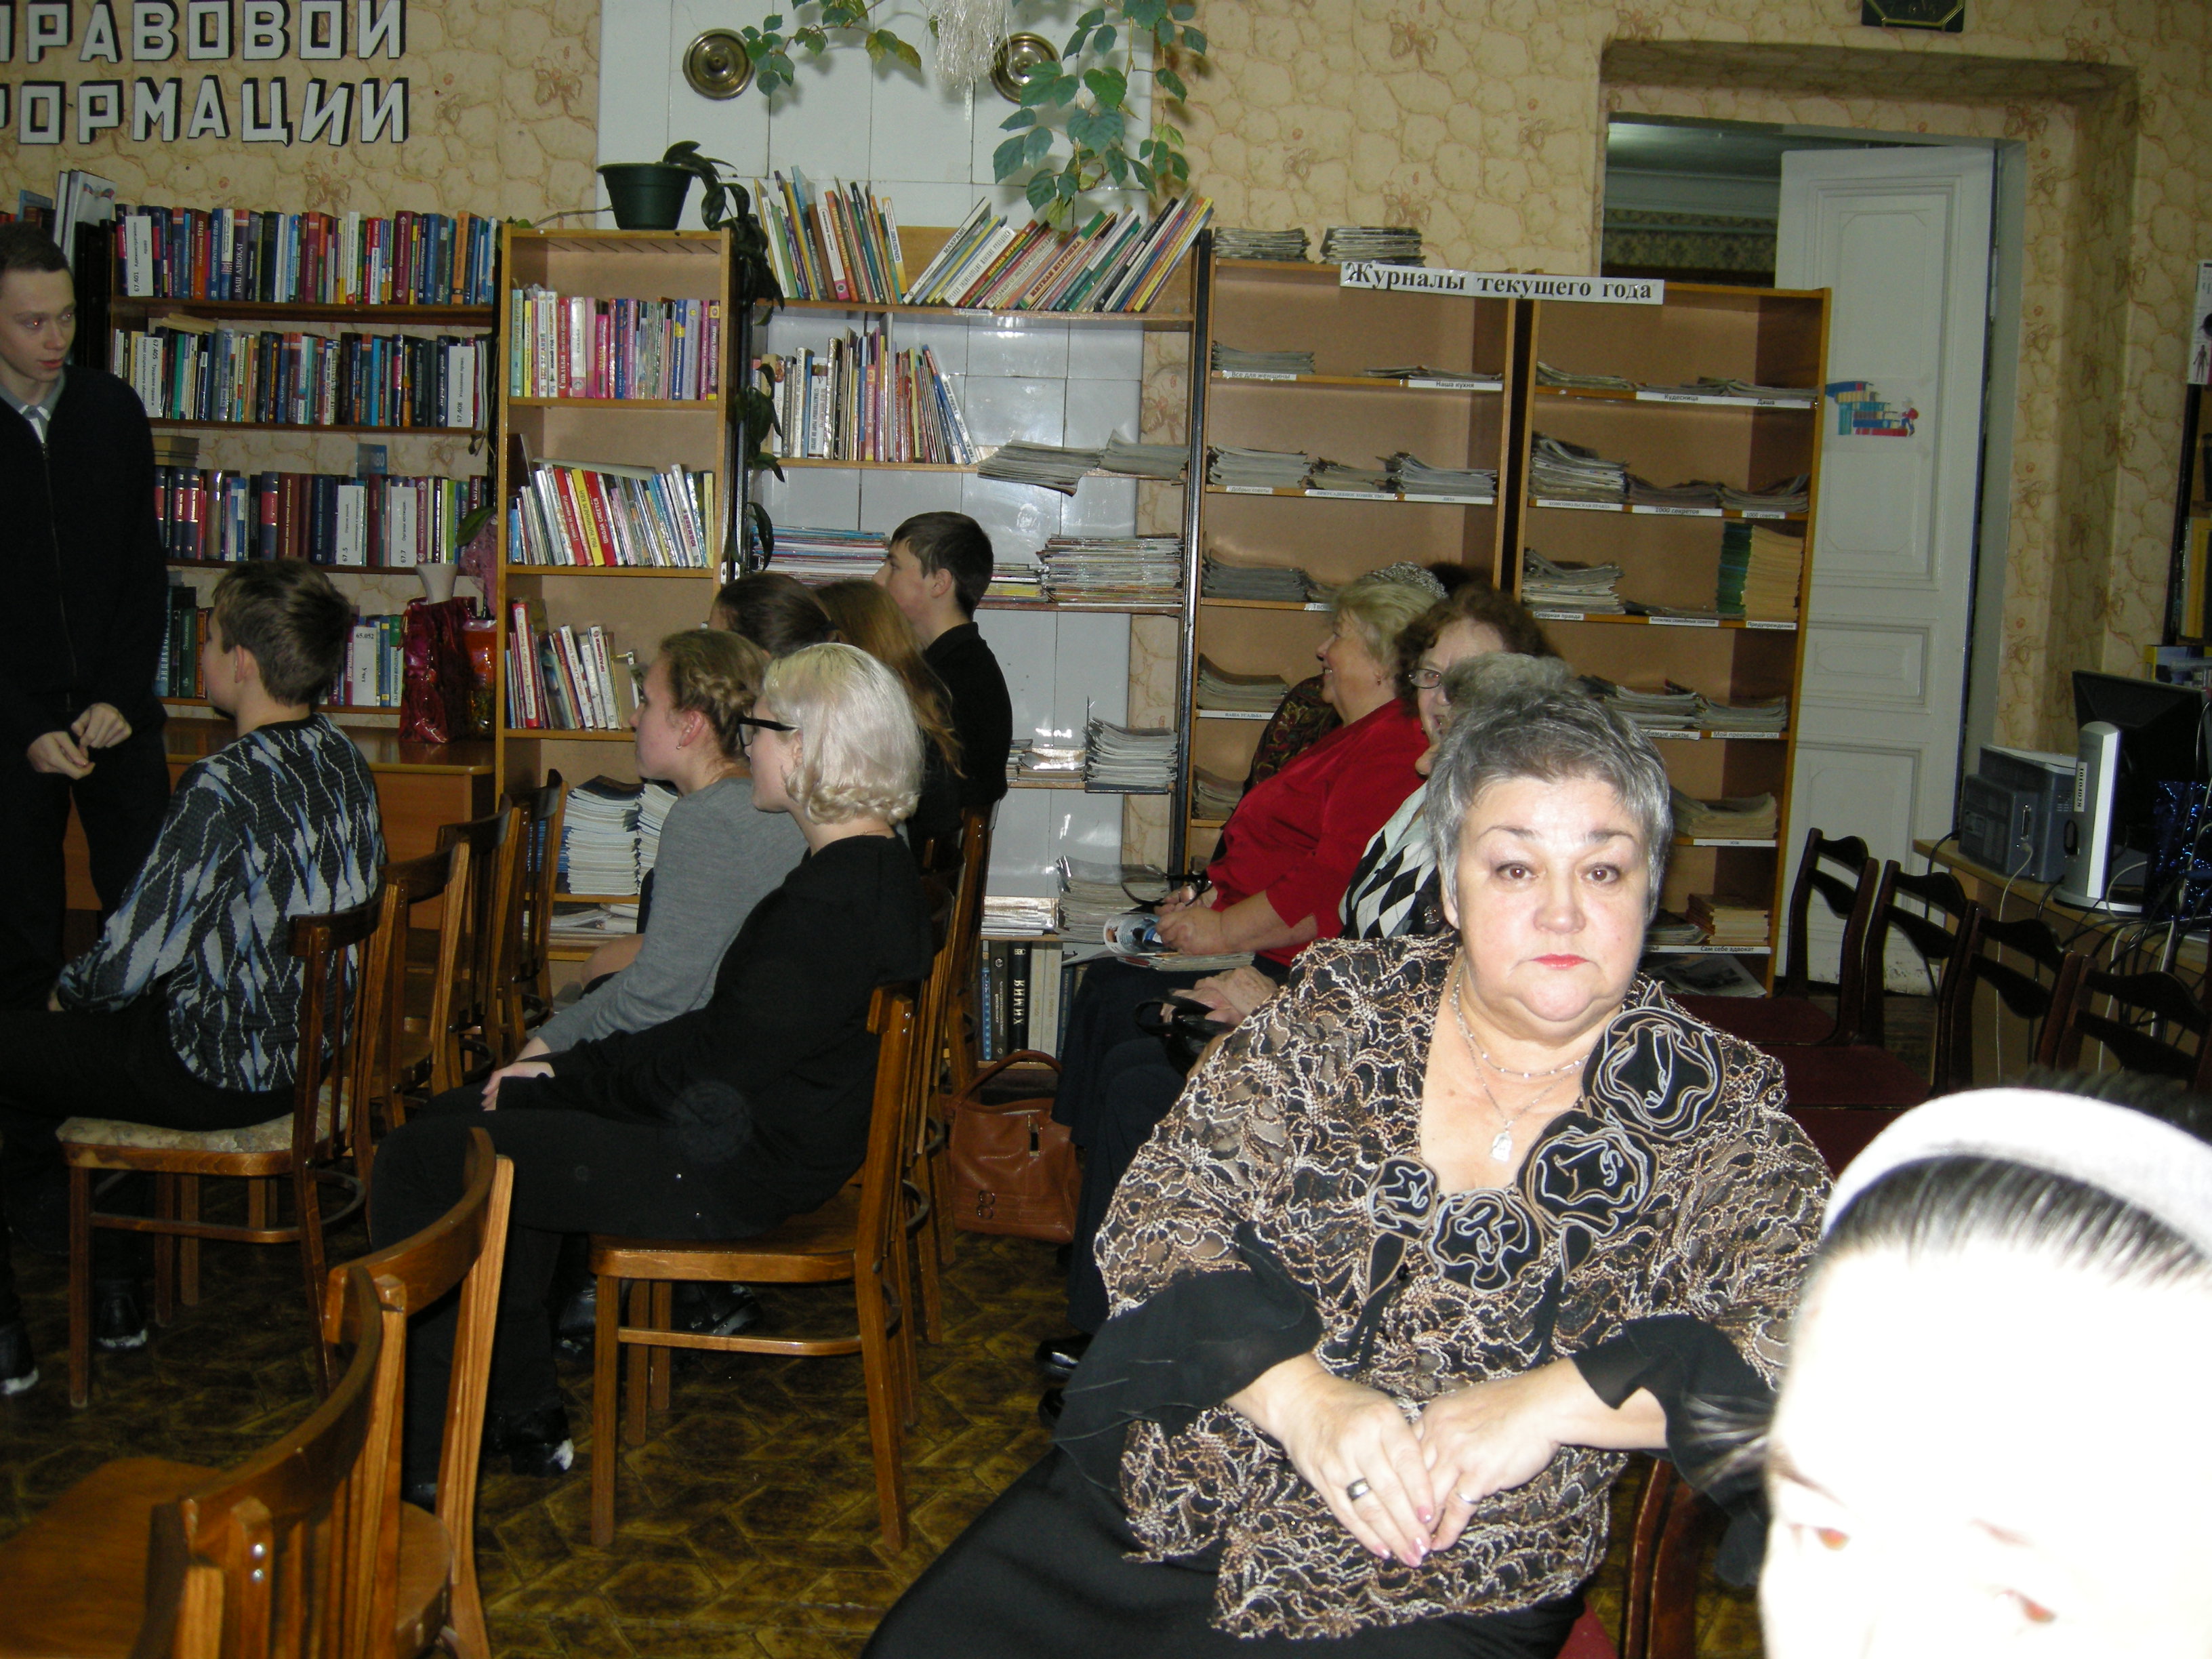 Юбилейный вечер Татьяны Николаевны Байковой. Гости собираются. фото Елены Балашовой